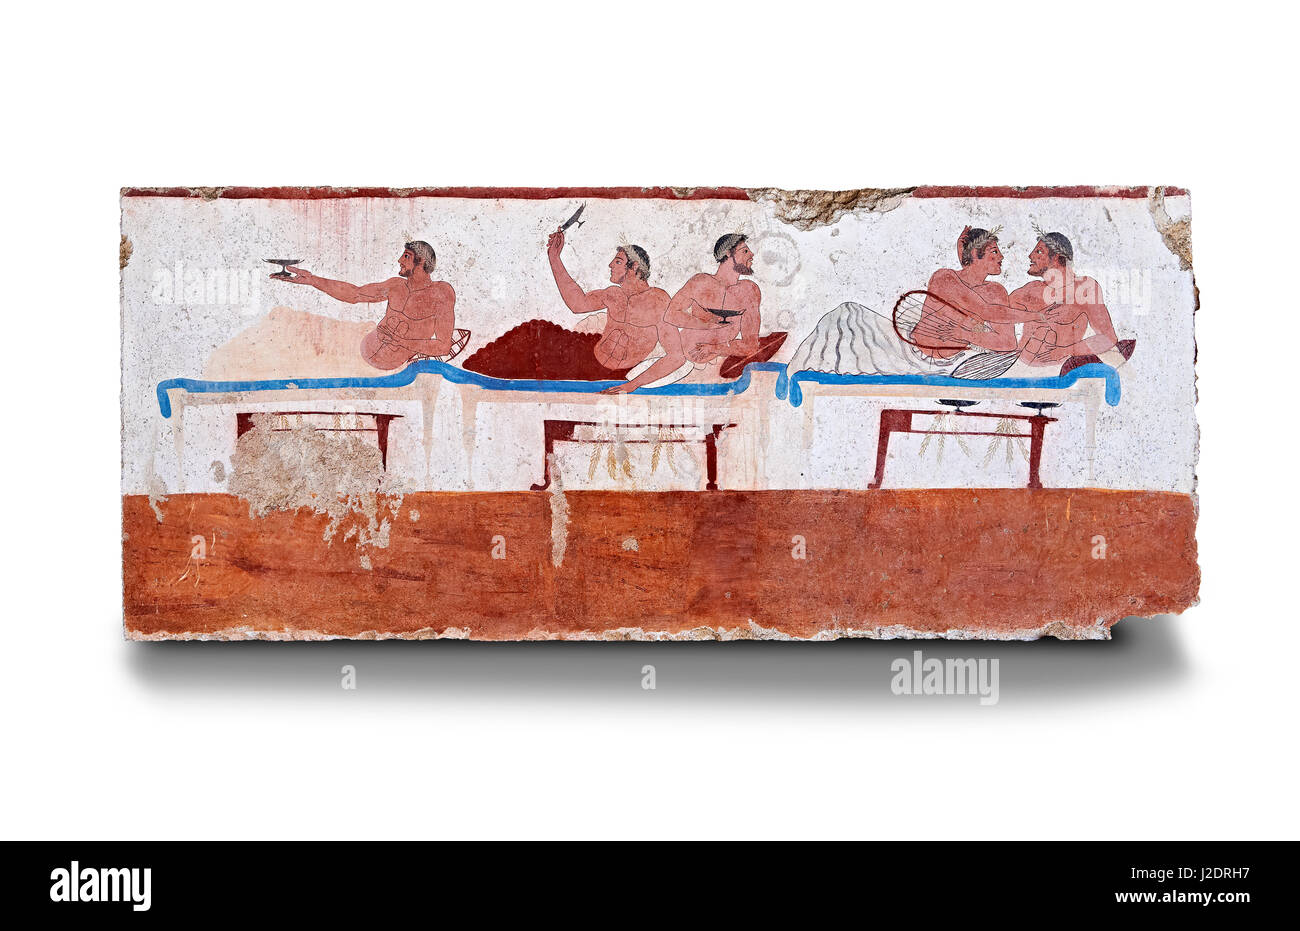 Griechischen Fresko auf der Innenseite der Grab des Tauchers [La Tomba del Truffatore]. Dieses Panel ist von einer Längsseite des Grabes und zeigt eine symposiu Stockfoto